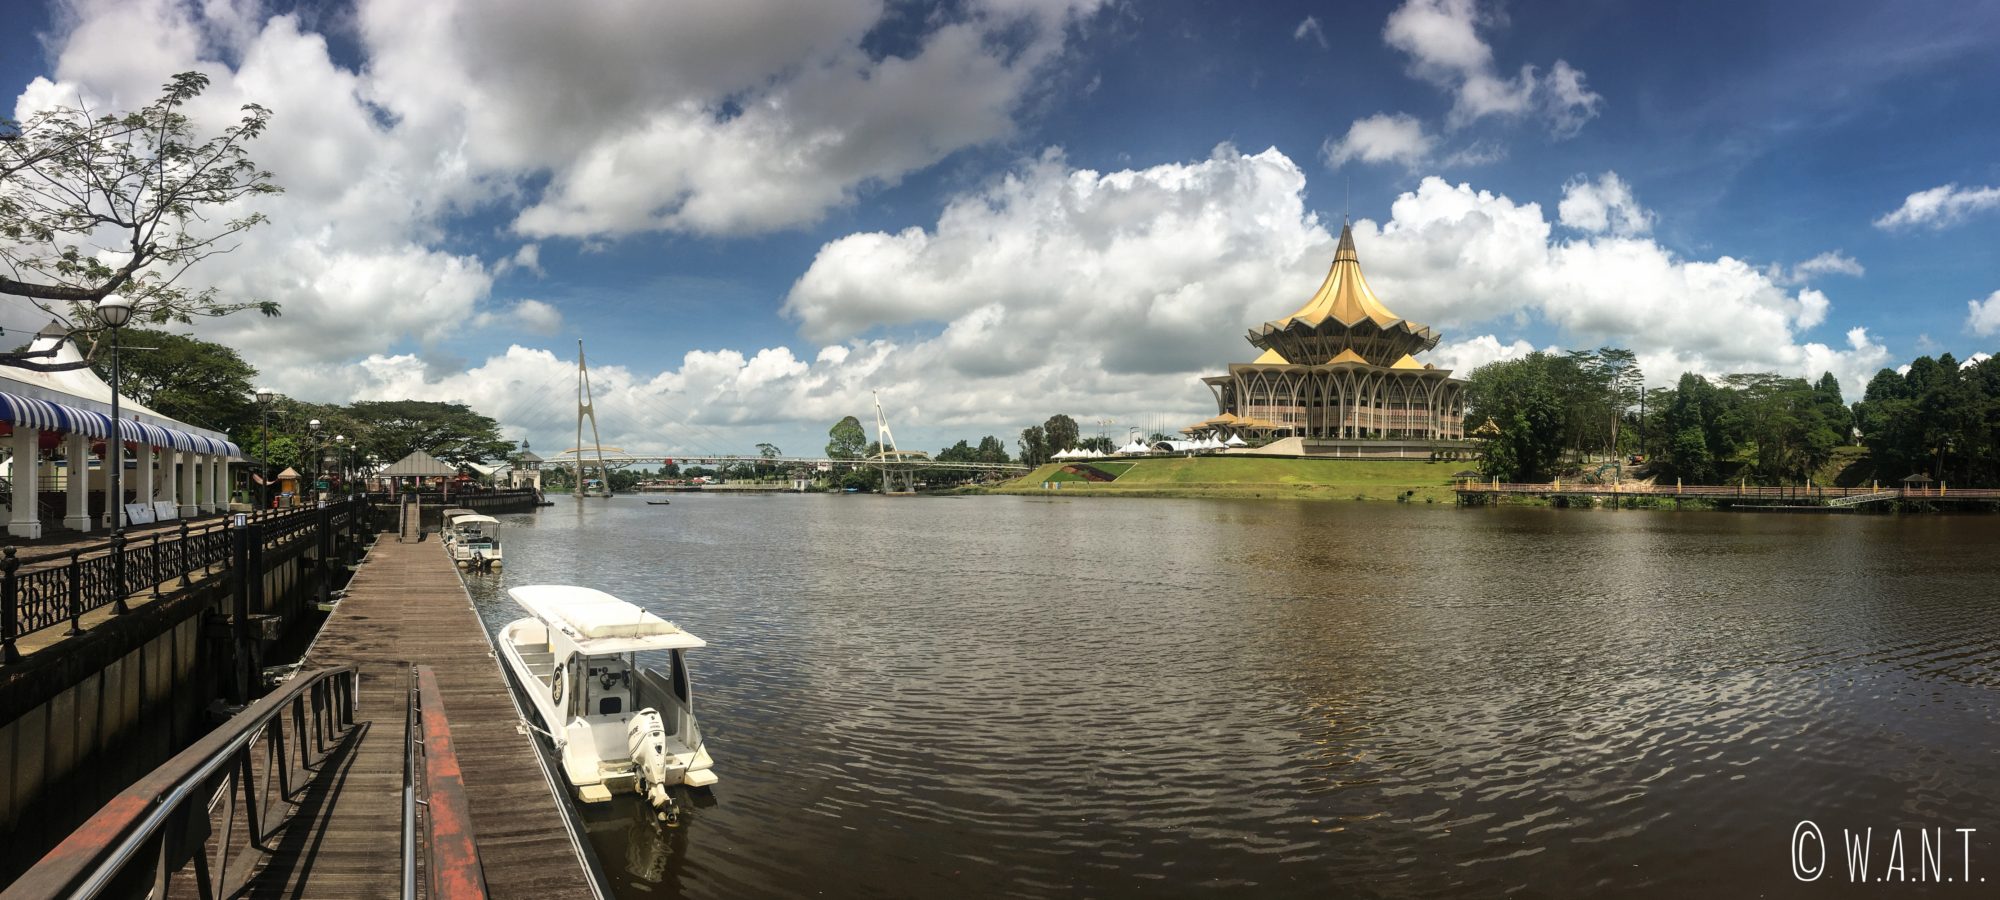 Assemblée législative du Sarawak de Kuching, depuis la rive opposée